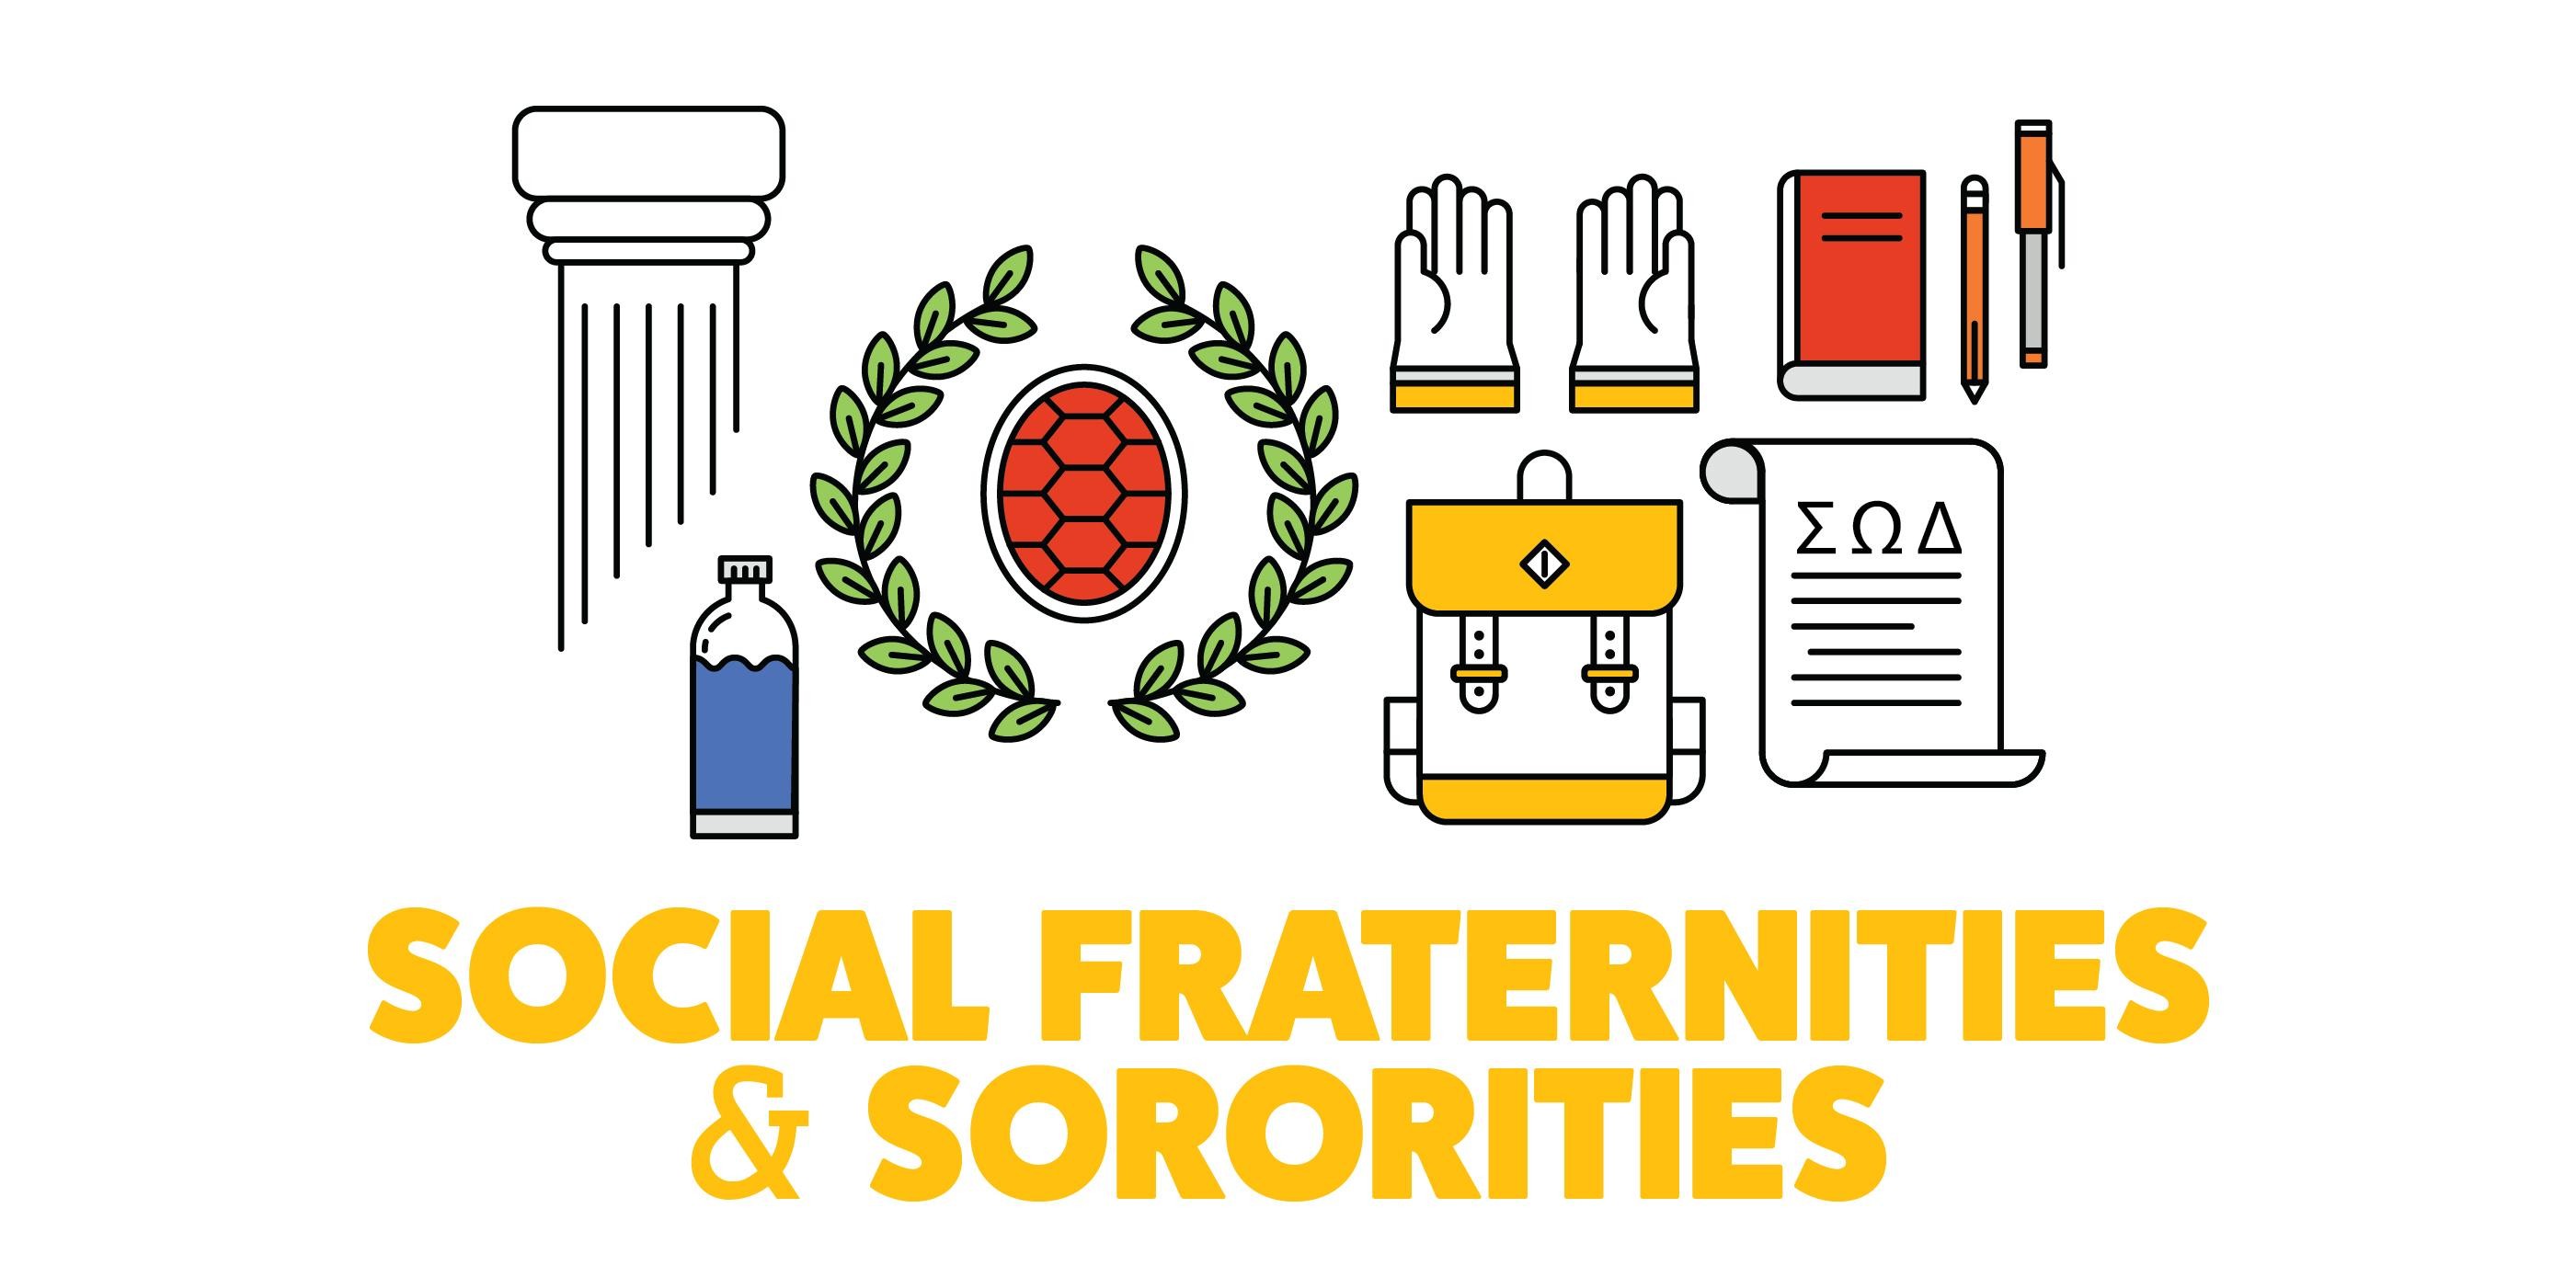 Social Fraternity/Sorority